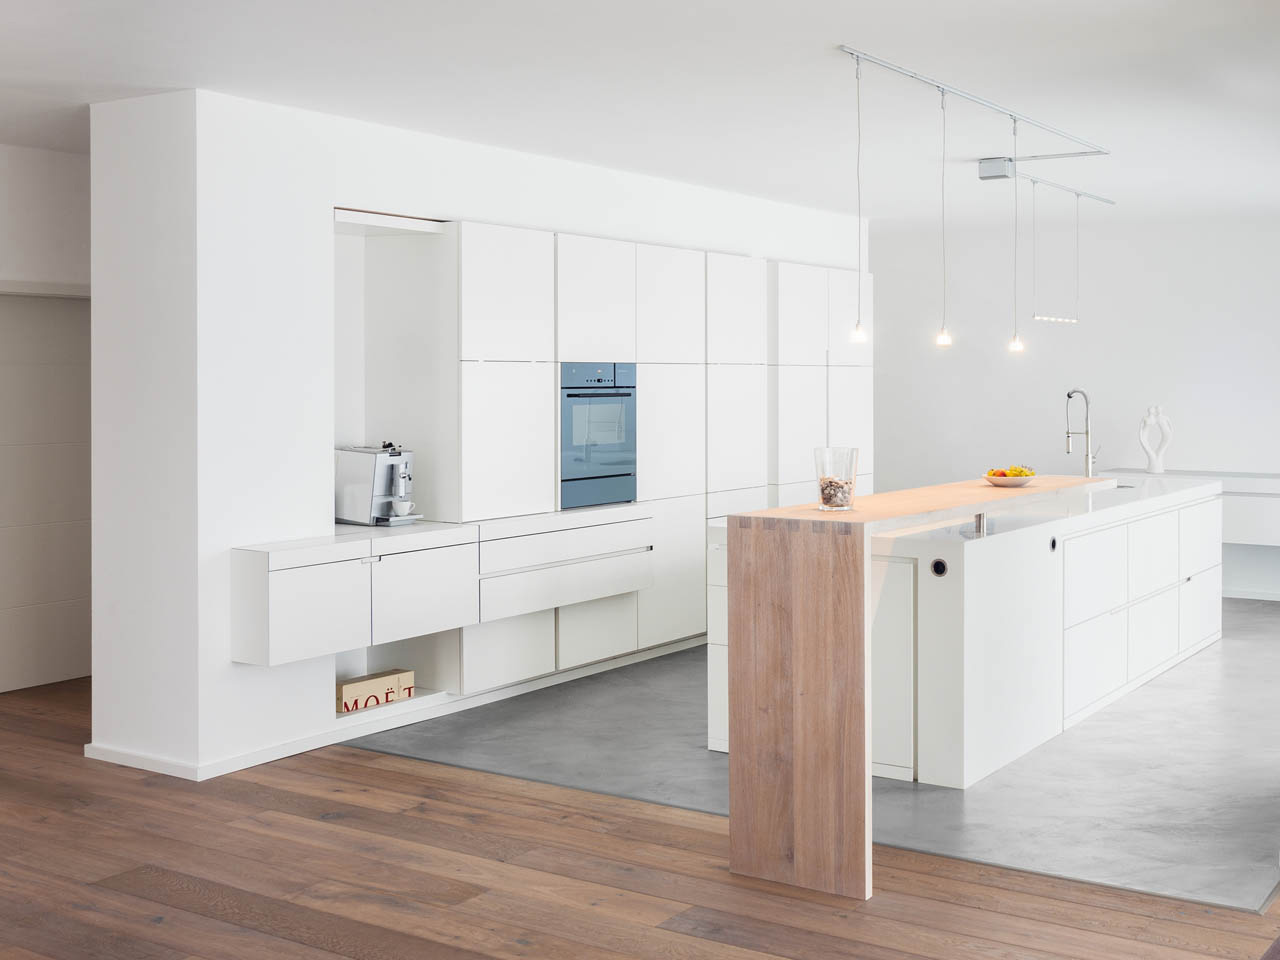 plan 3 küche / Modernes minimales Wohnen / Homogenes Design